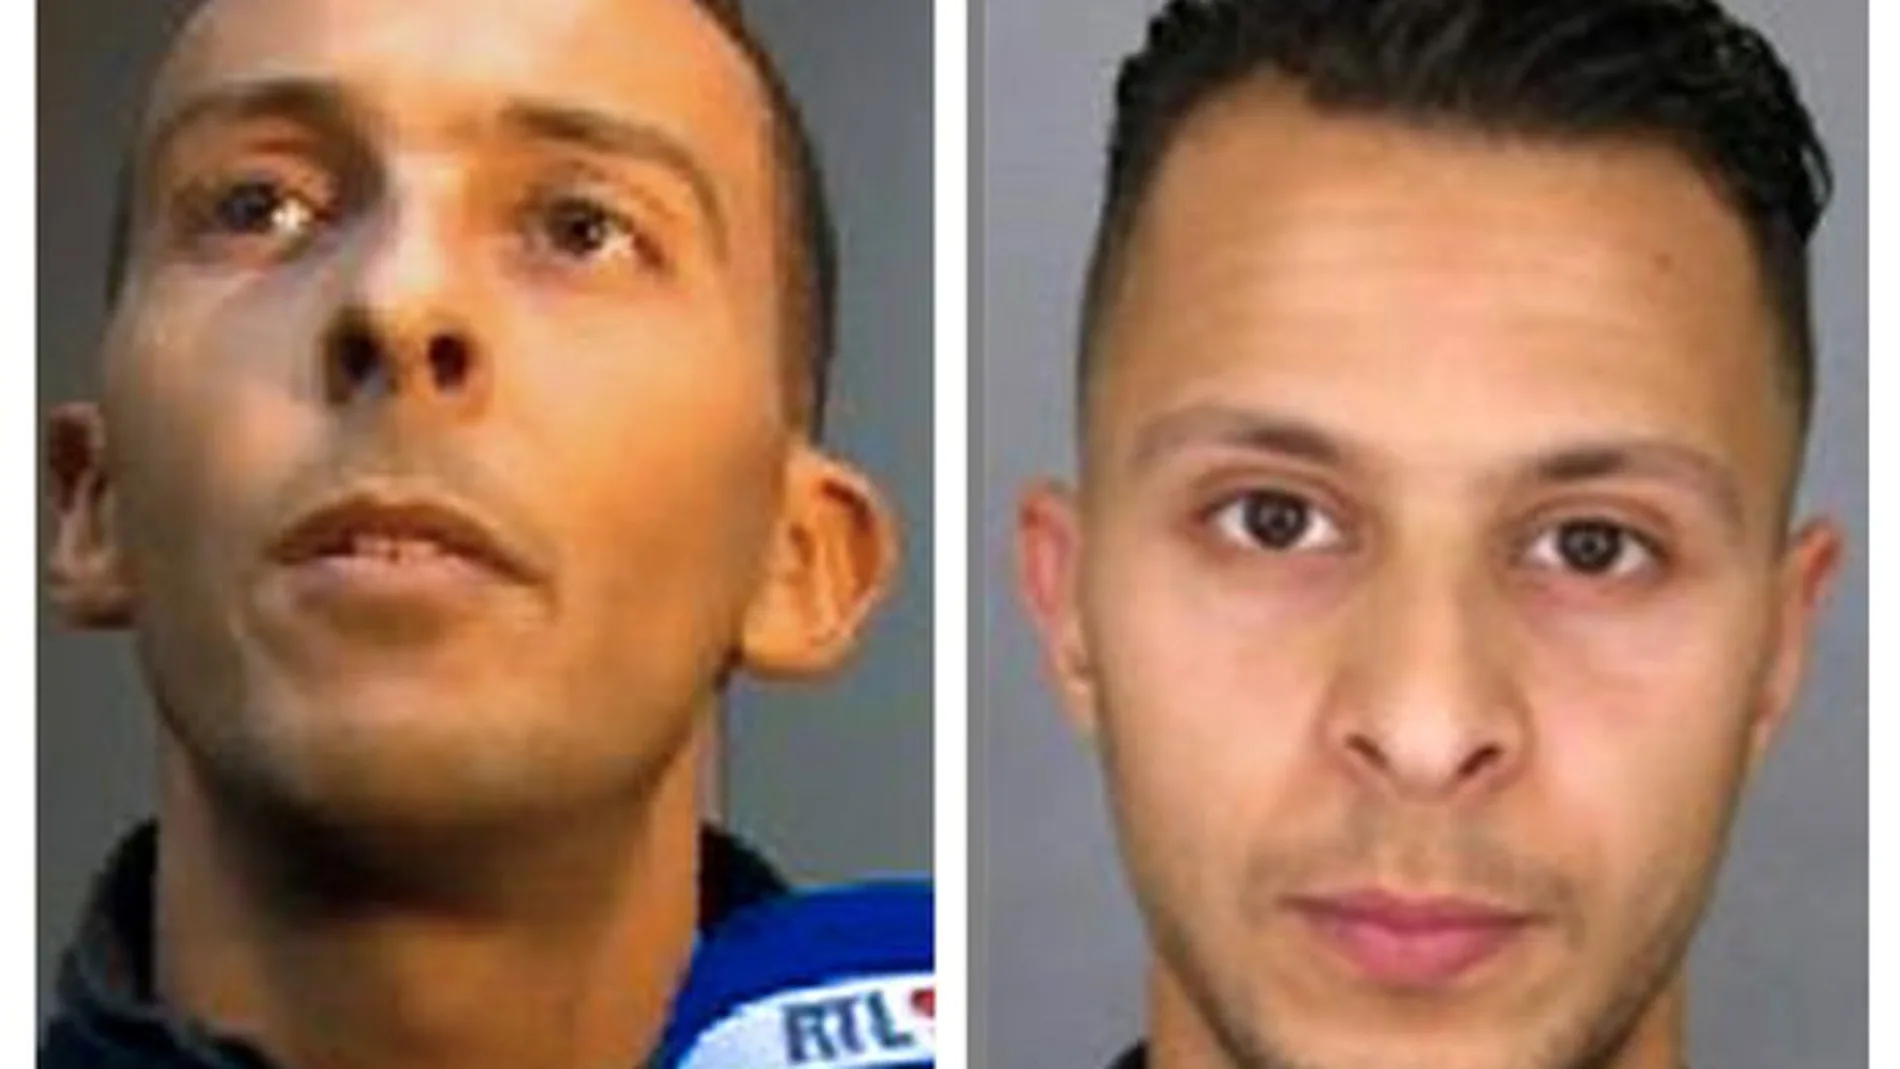 Ibrahim y Salah Abdselam, nacidos en Bélgica, actuaron en de los ataques del 13-N en París. El primero se inmoló en la sala Bataclan y el segundo fue detenido hace cinco días.